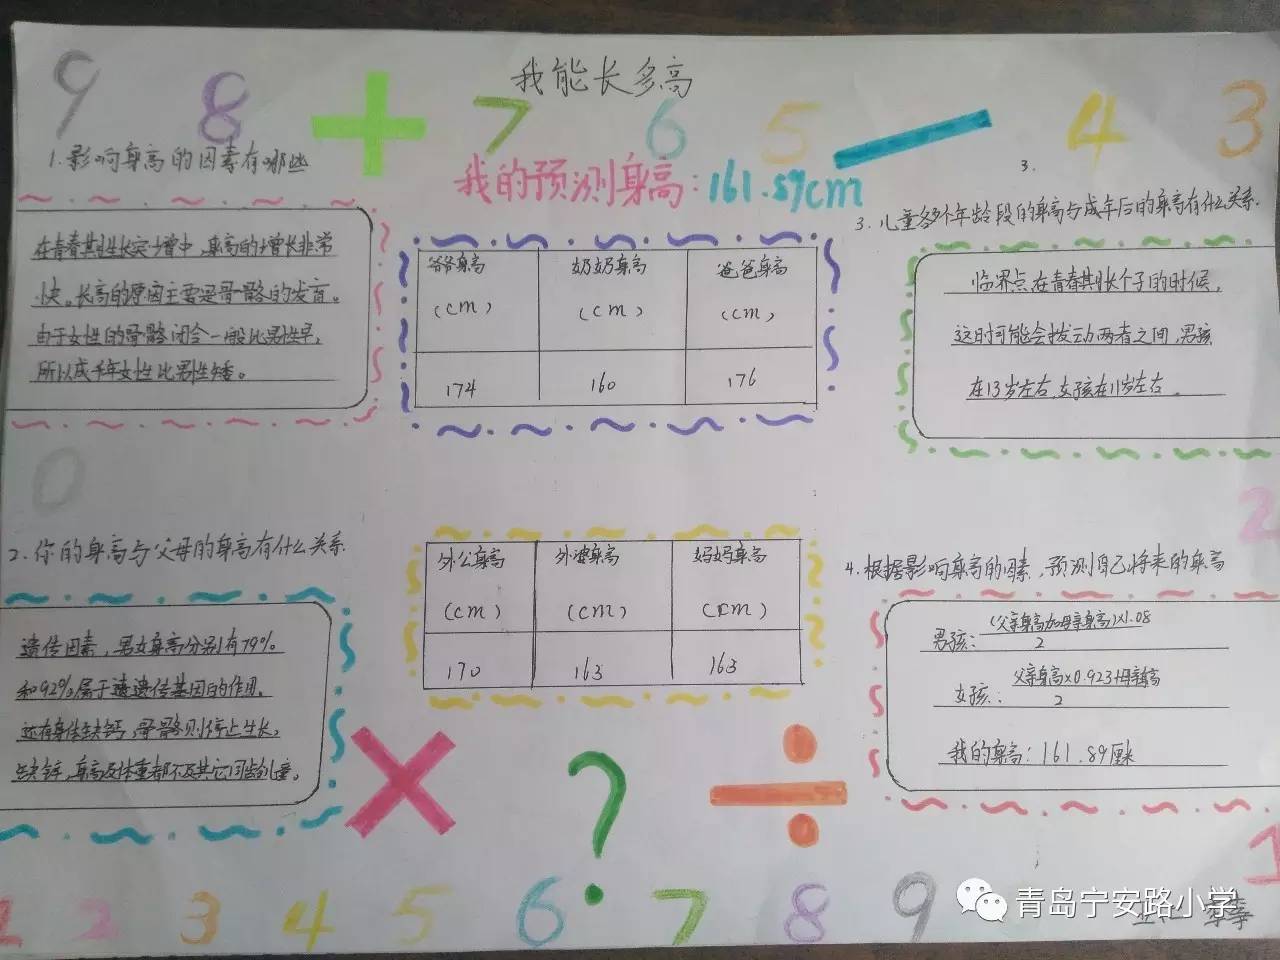 青岛宁安路小学数学实践作业展示活动五年级实践作业展